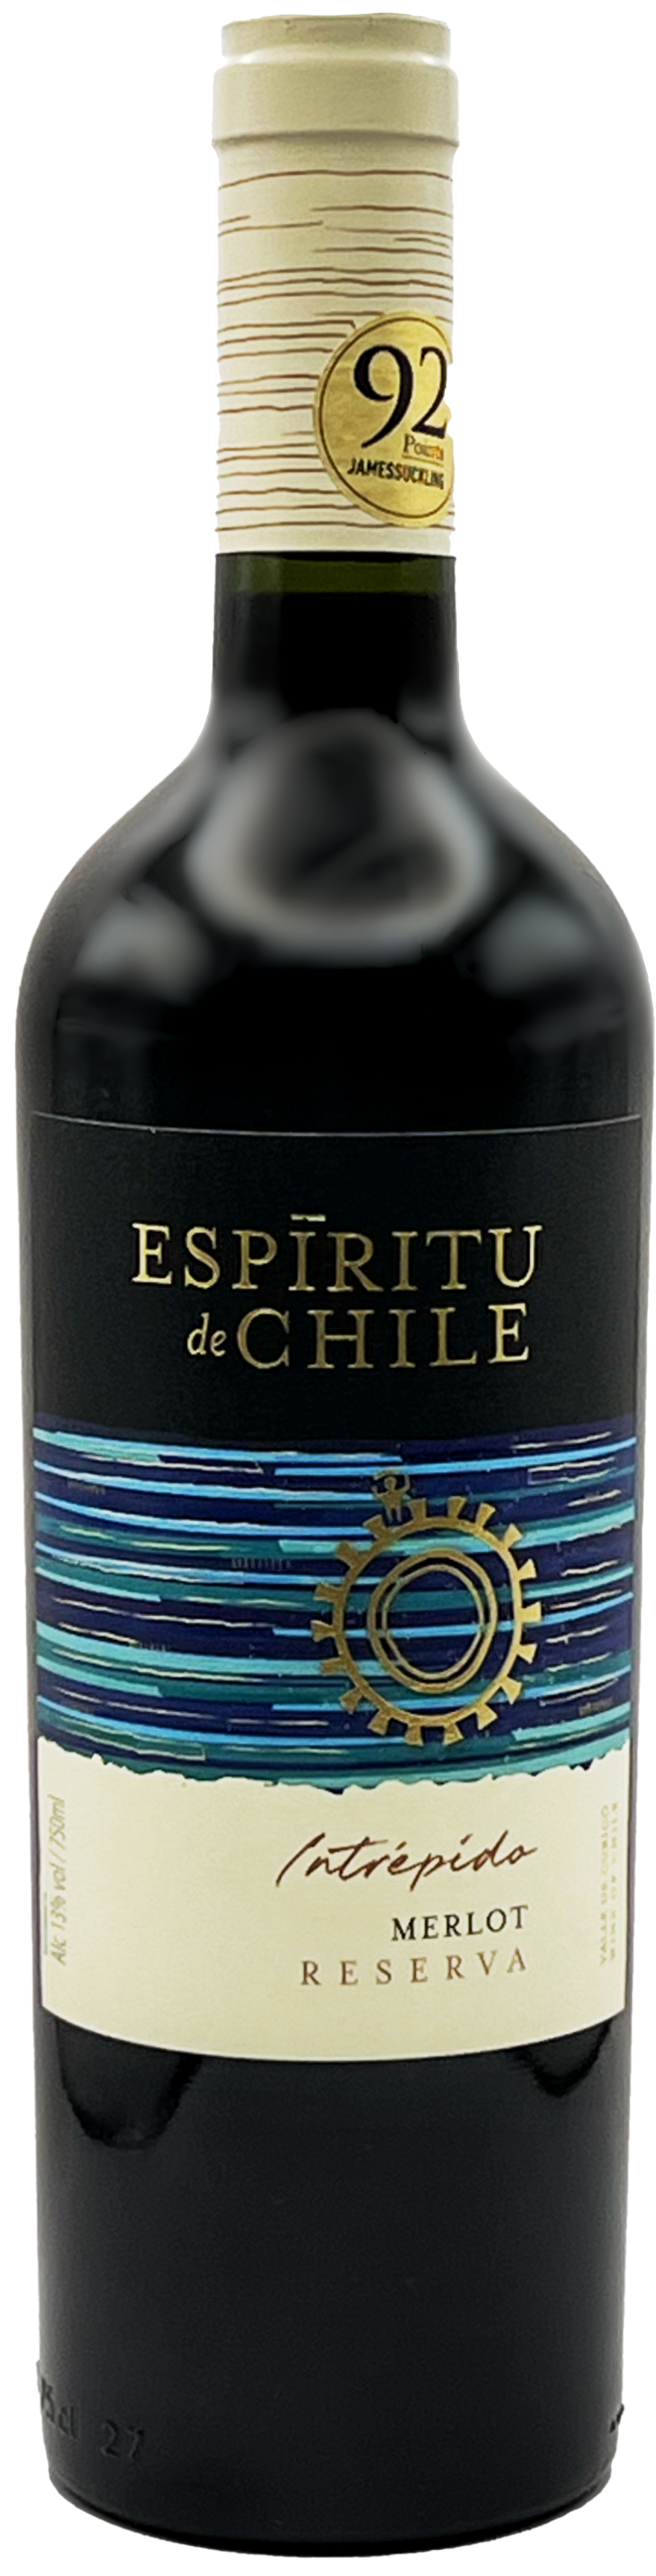 Espiritu de Chile Reserva Values 2019 Bottle - Merlot